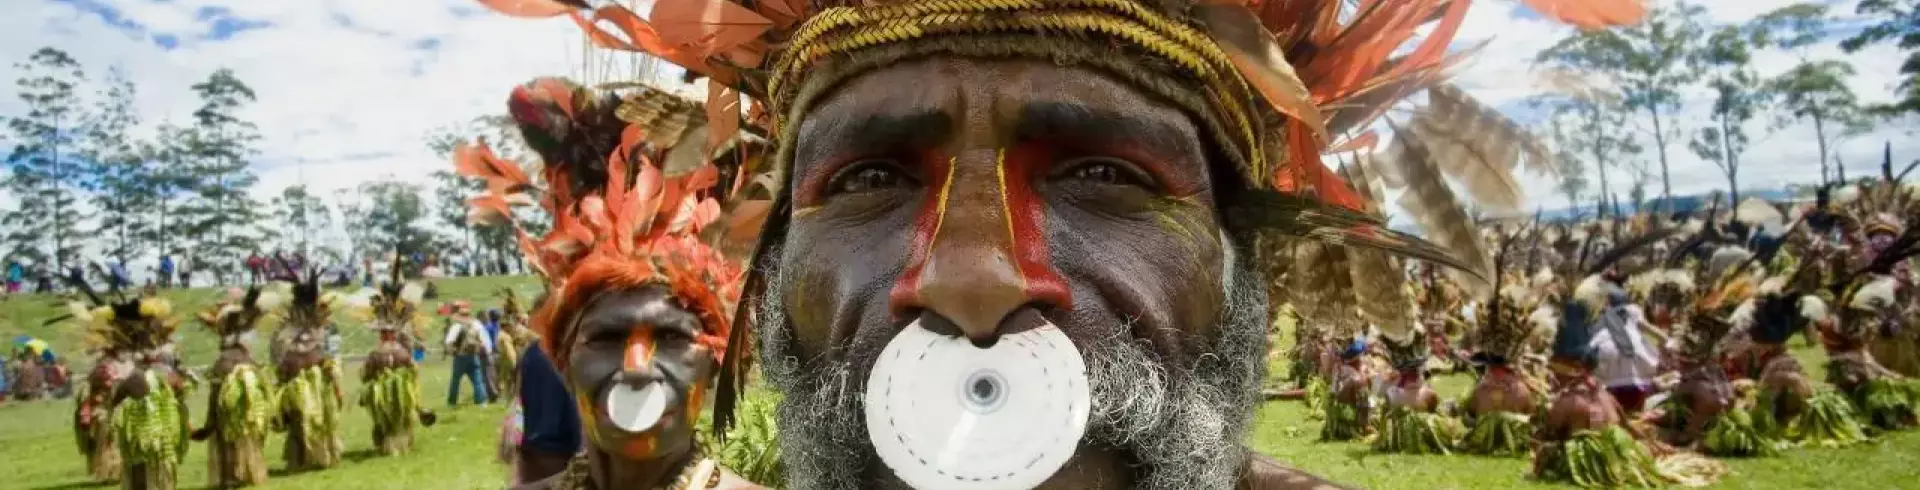 PAPUA NOWA GWINEA z festiwalem w Goroka i Wyspami Trobrianda opcja SUMATRA (Indonezja)